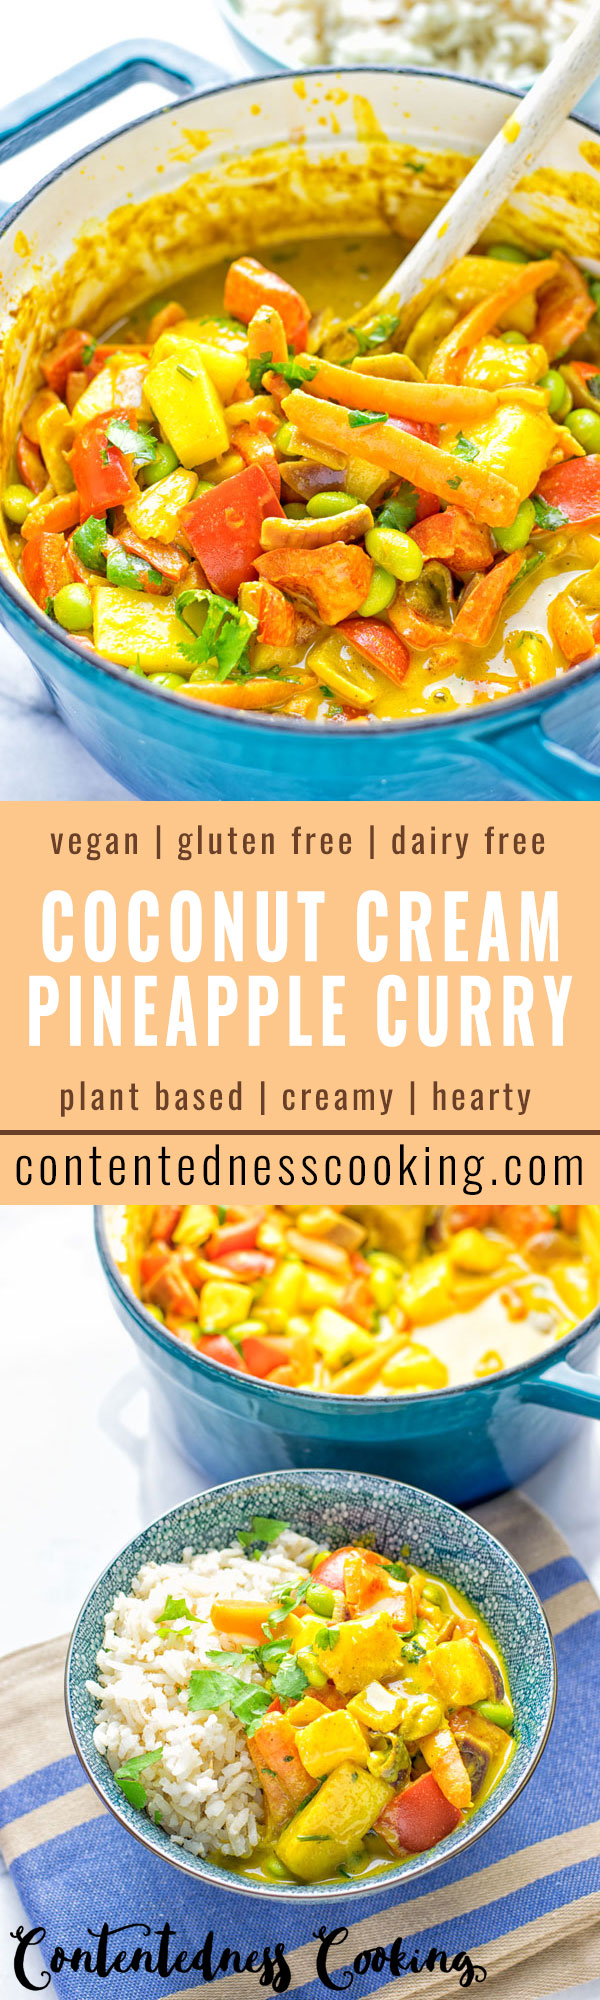 Coconut Cream Pineapple Curry | #vegan #glutenfree #contentednesscooking